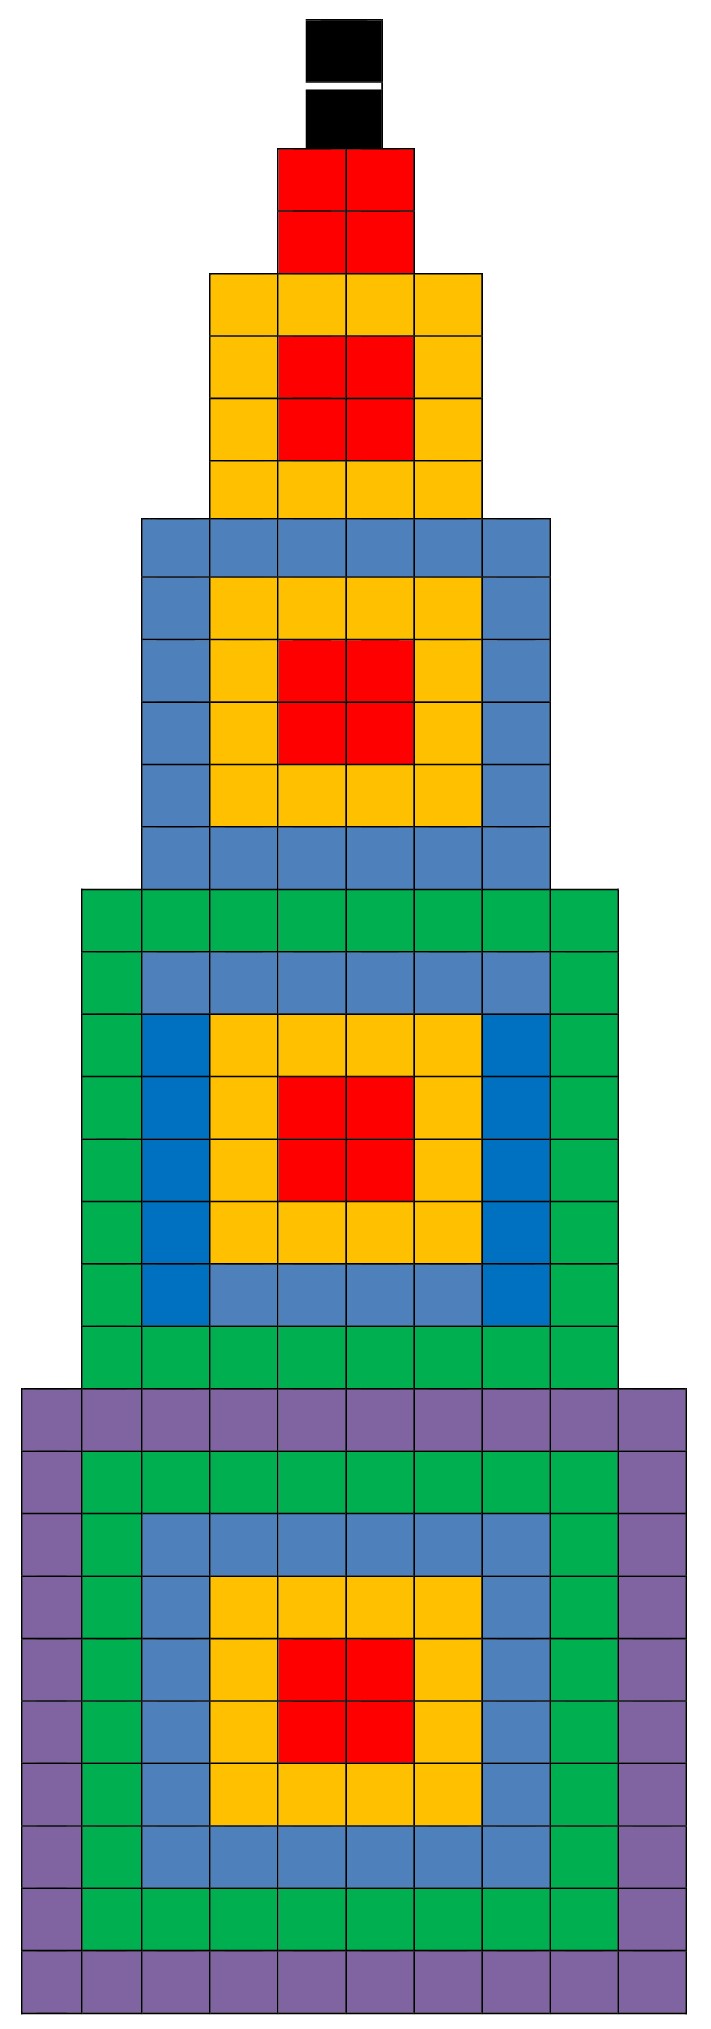 Рис.1. Верхняя нулевая ступень состоит из двух черных ячеек, а 1, 2, 3, 4 и 5-ый цветные квадратные ступени (уровни) из квадратных ячеек для химических элементов.